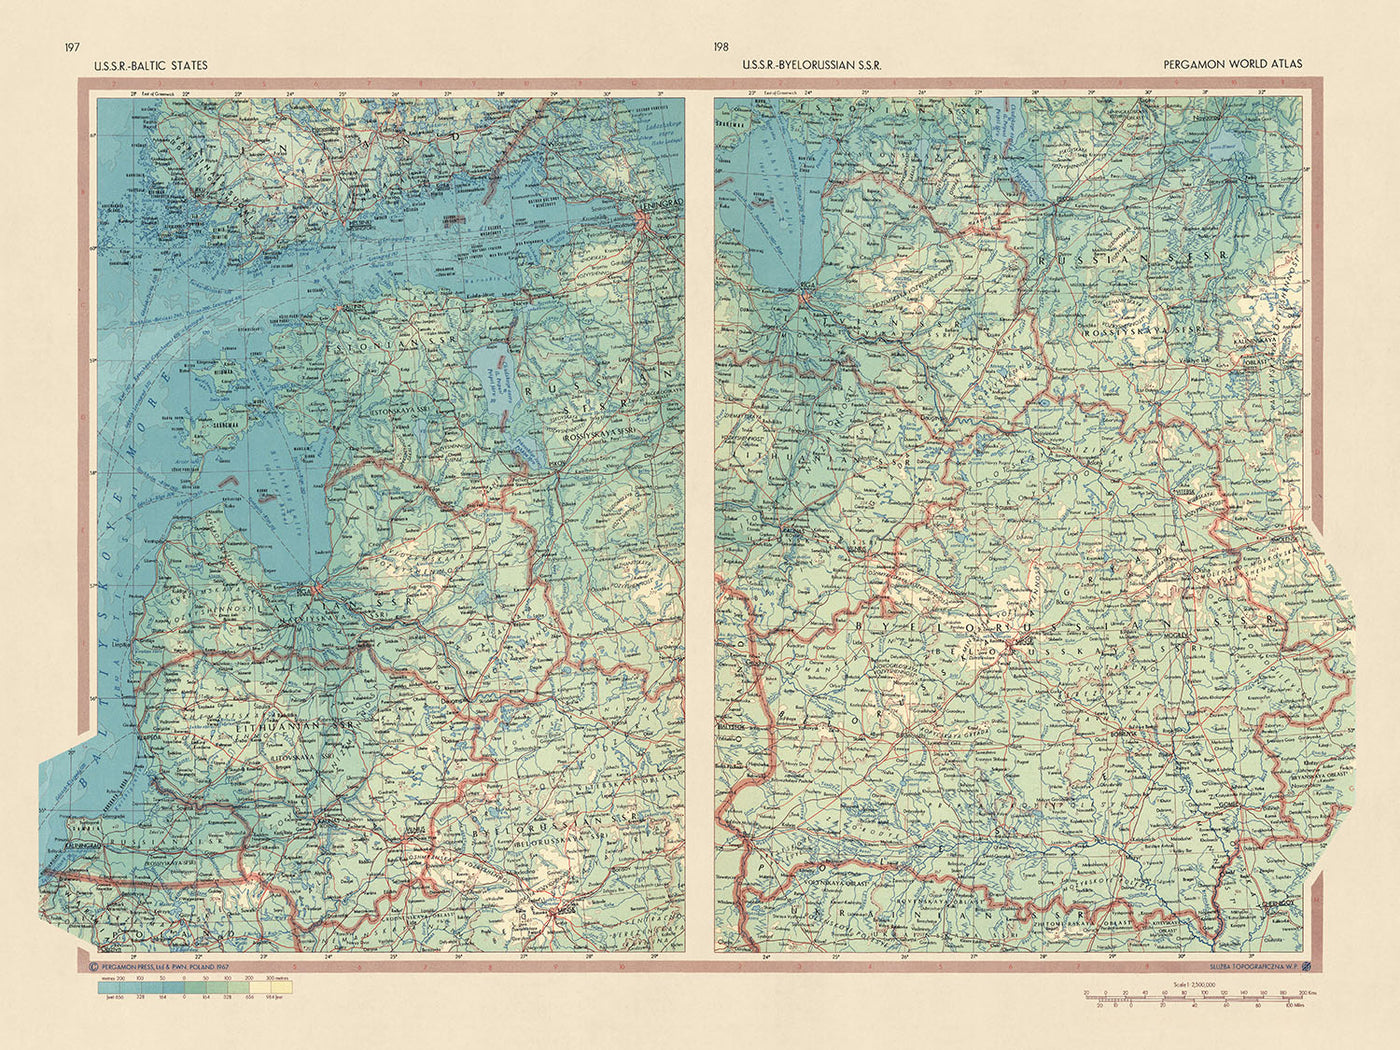 Mapa antiguo de los Estados bálticos y Bielorrusia, Servicio de Topografía del Ejército Polaco, 1967: Riga, Minsk, Vilna, Golfo de Riga, Laguna de Curlandia